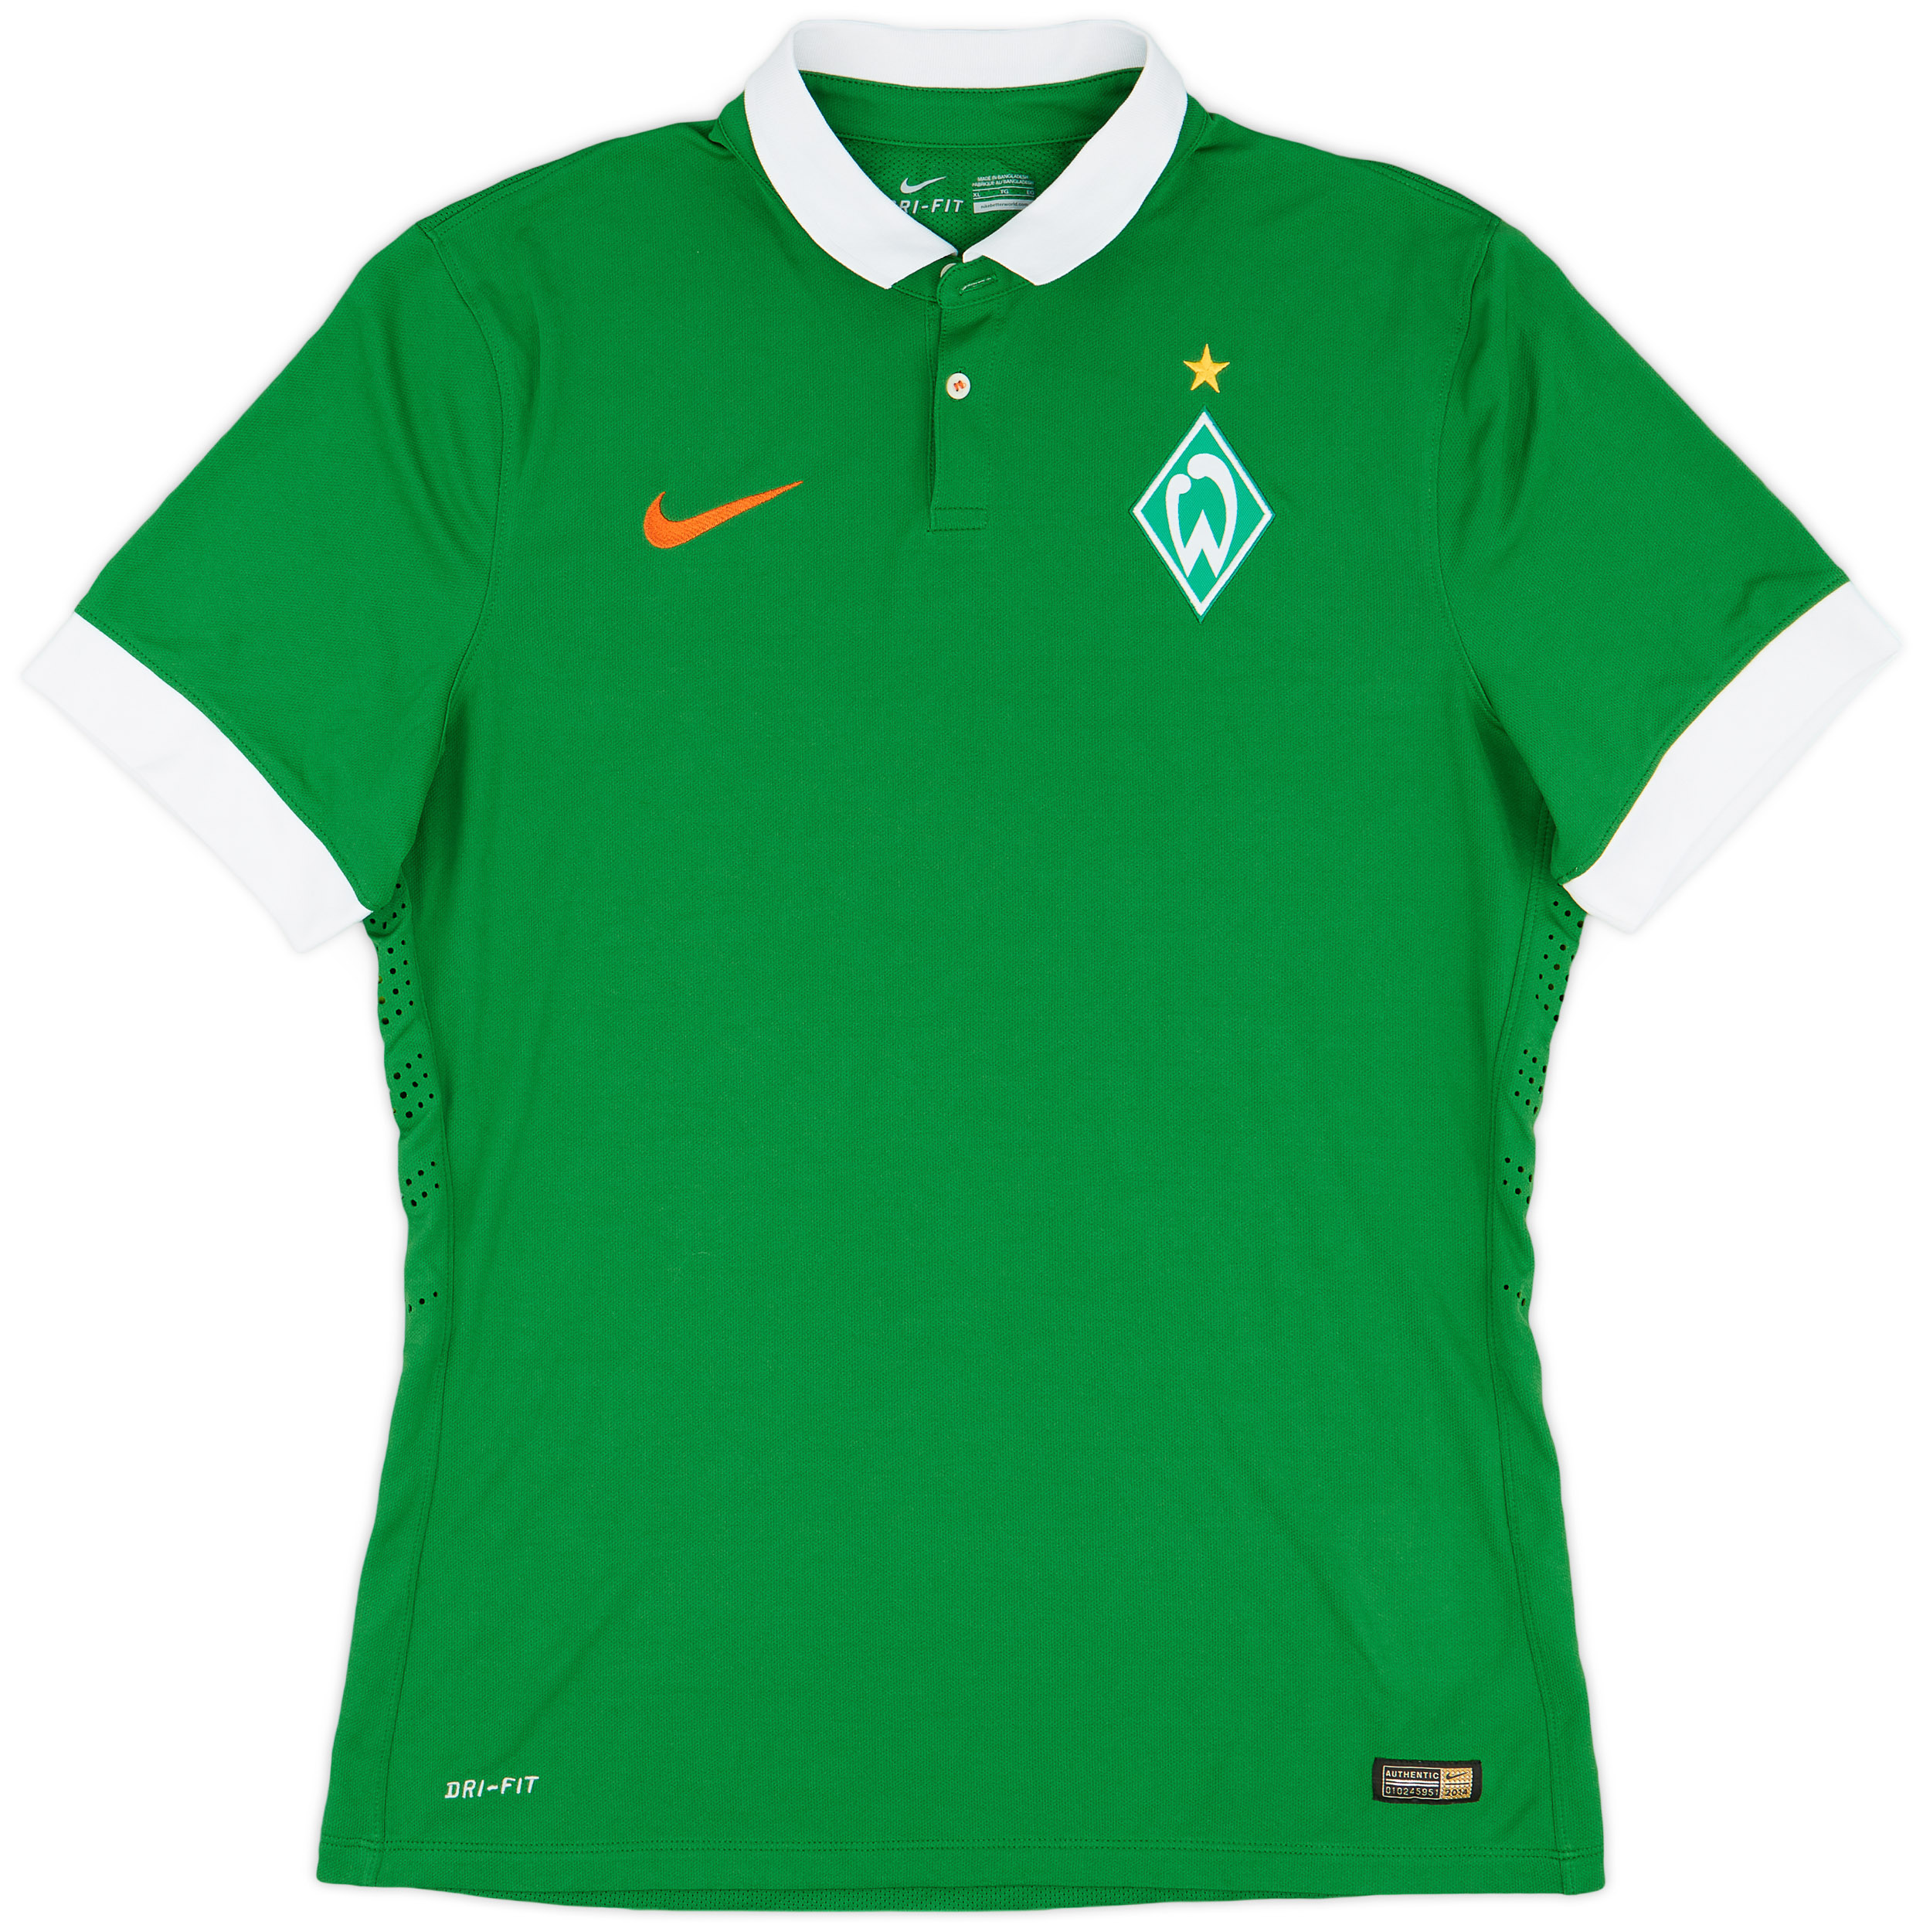 2014-15 Werder Bremen Player Issue Home Shirt - 9/10 - ()